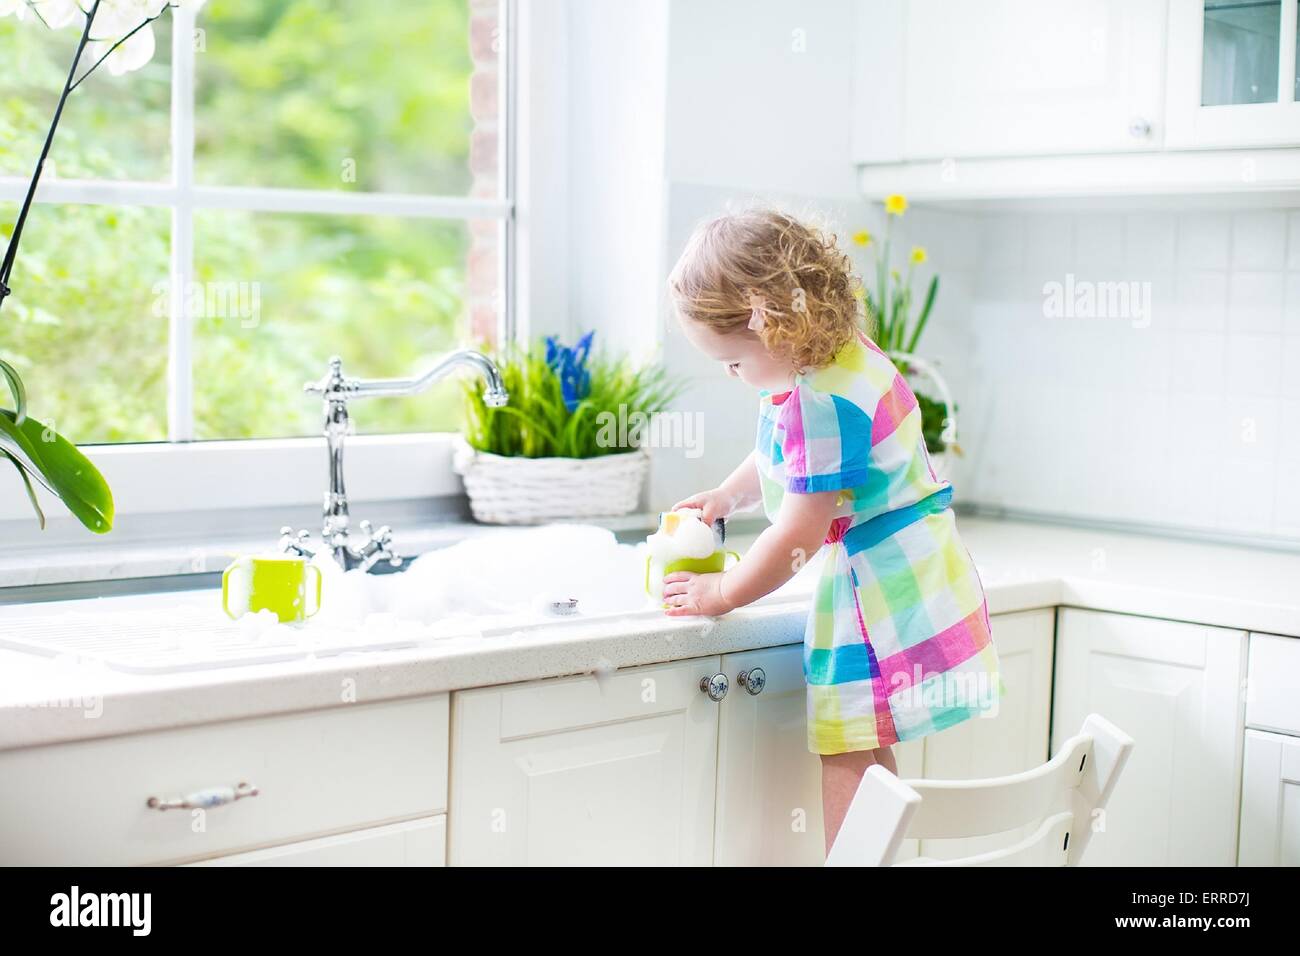 Kids Washing Dishes Stock Illustration - Download Image Now - Washing, Washing  Dishes, Child - iStock